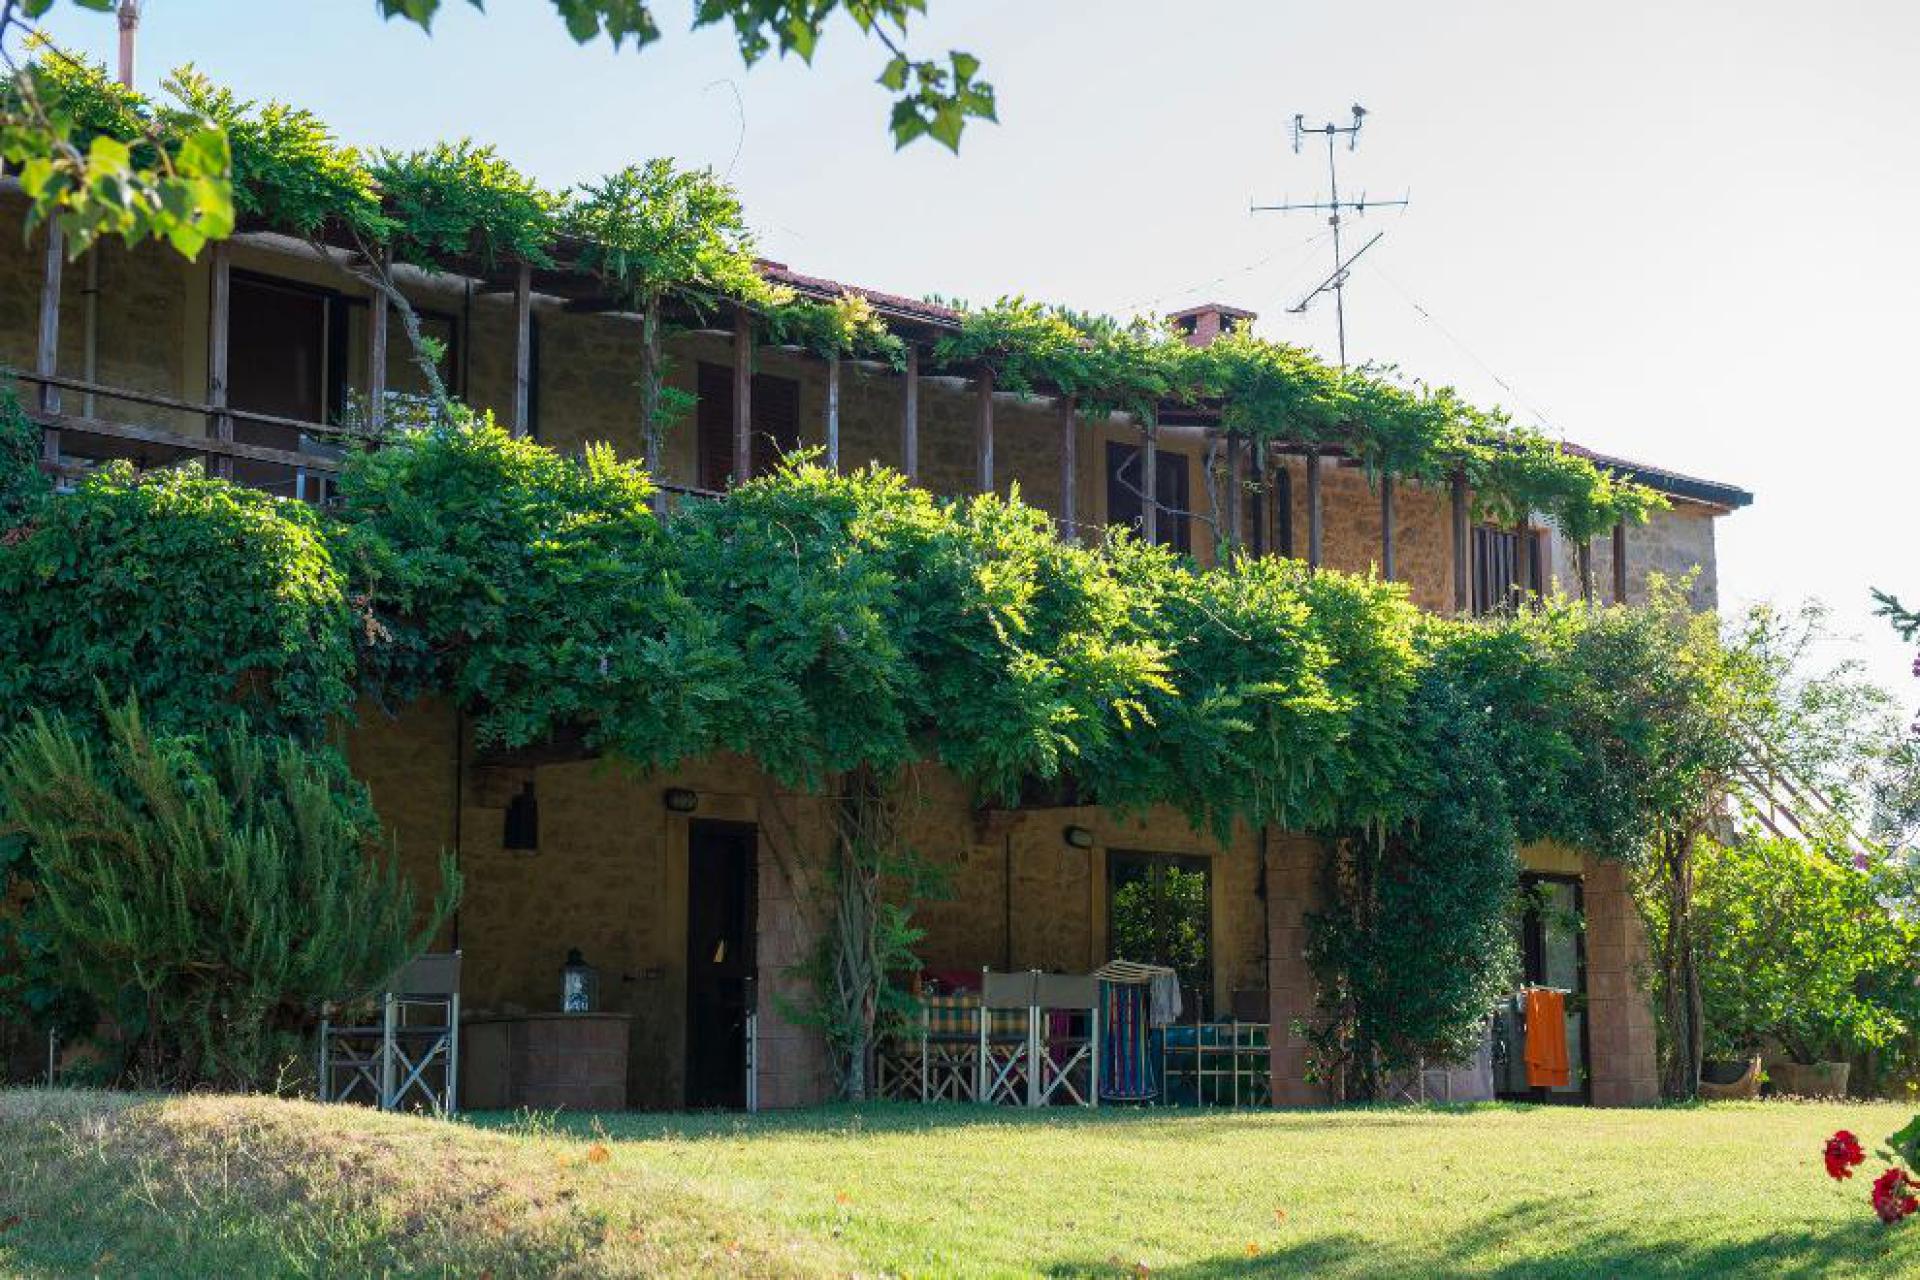 Agriturismo Toscane Familievriendelijke agriturismo met rustige ligging in Toscane